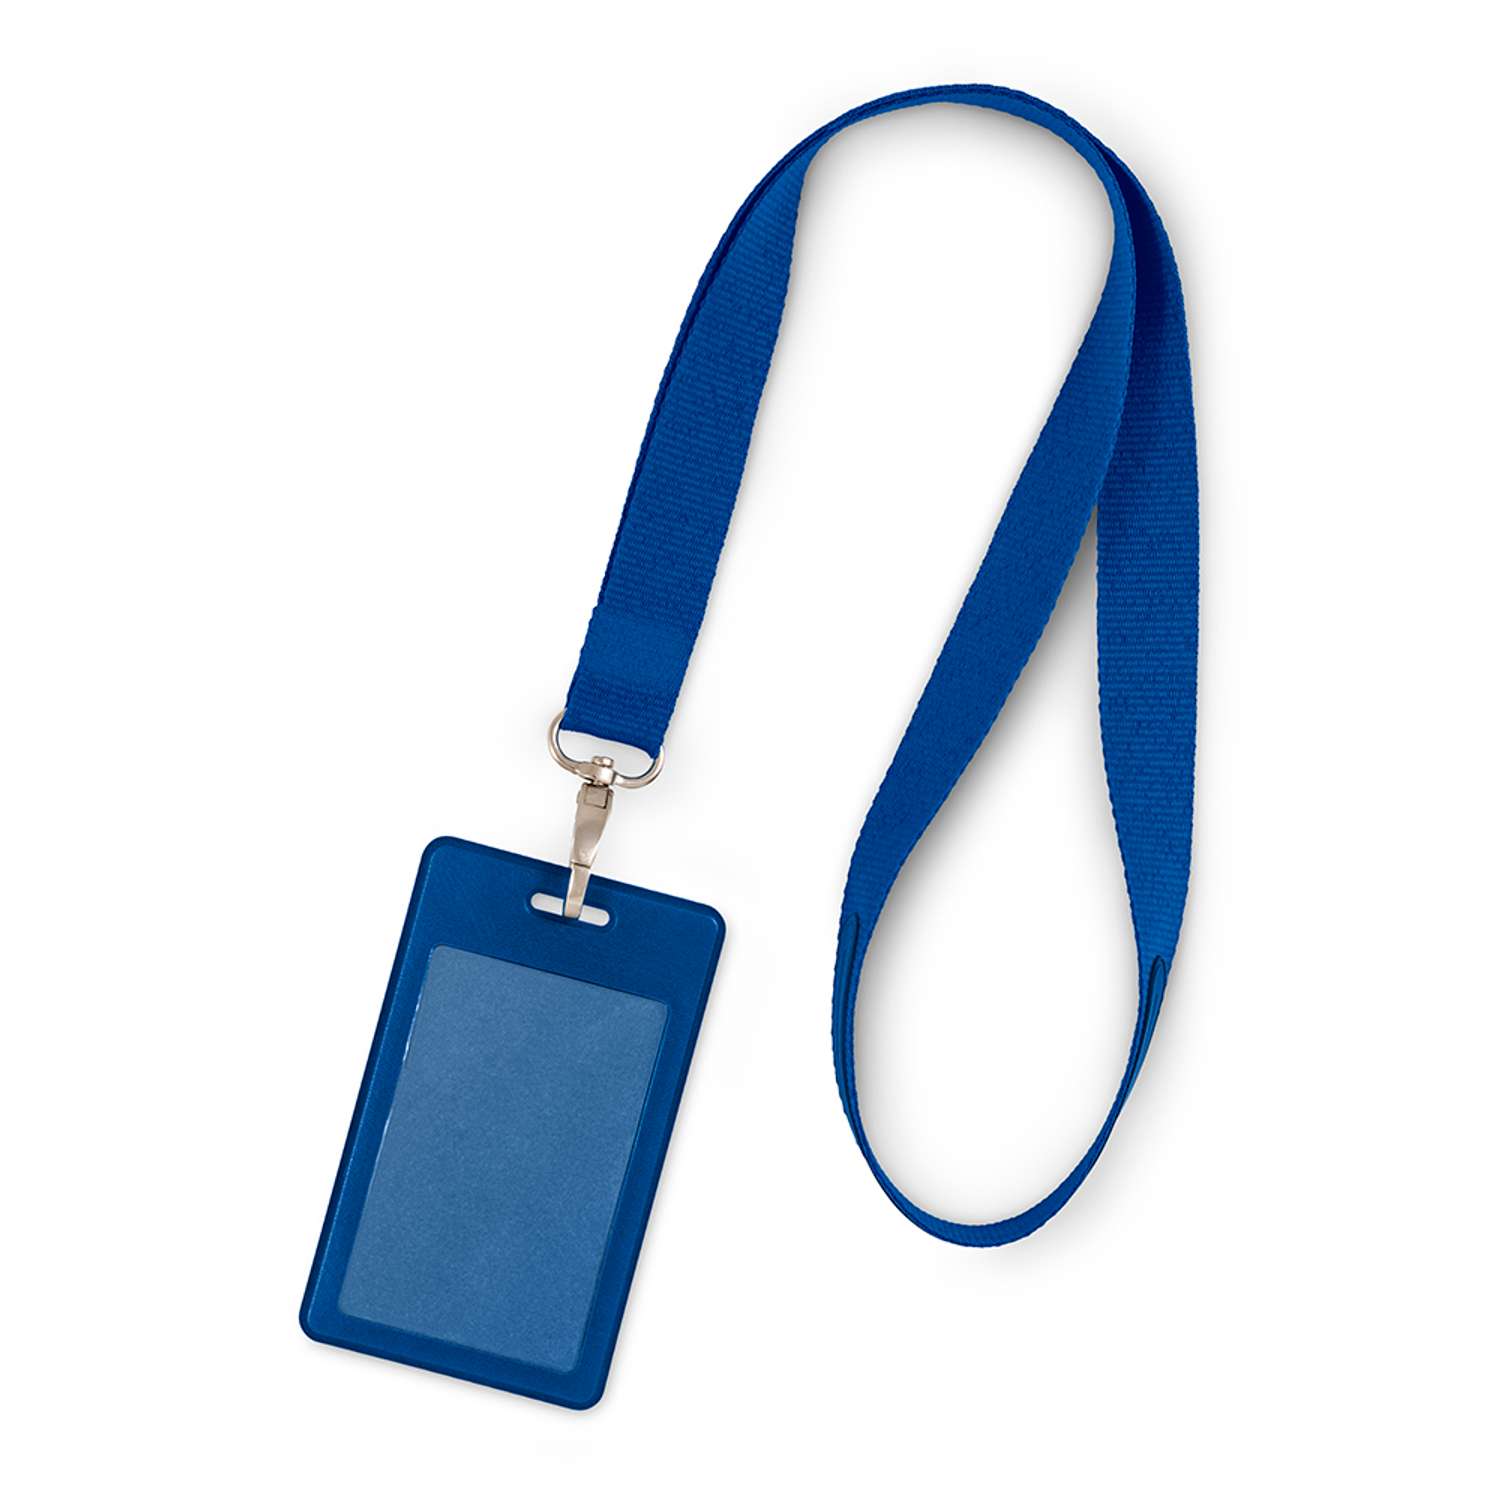 Лента с карманом для пропуска Flexpocket из экокожи цвет синий - фото 1